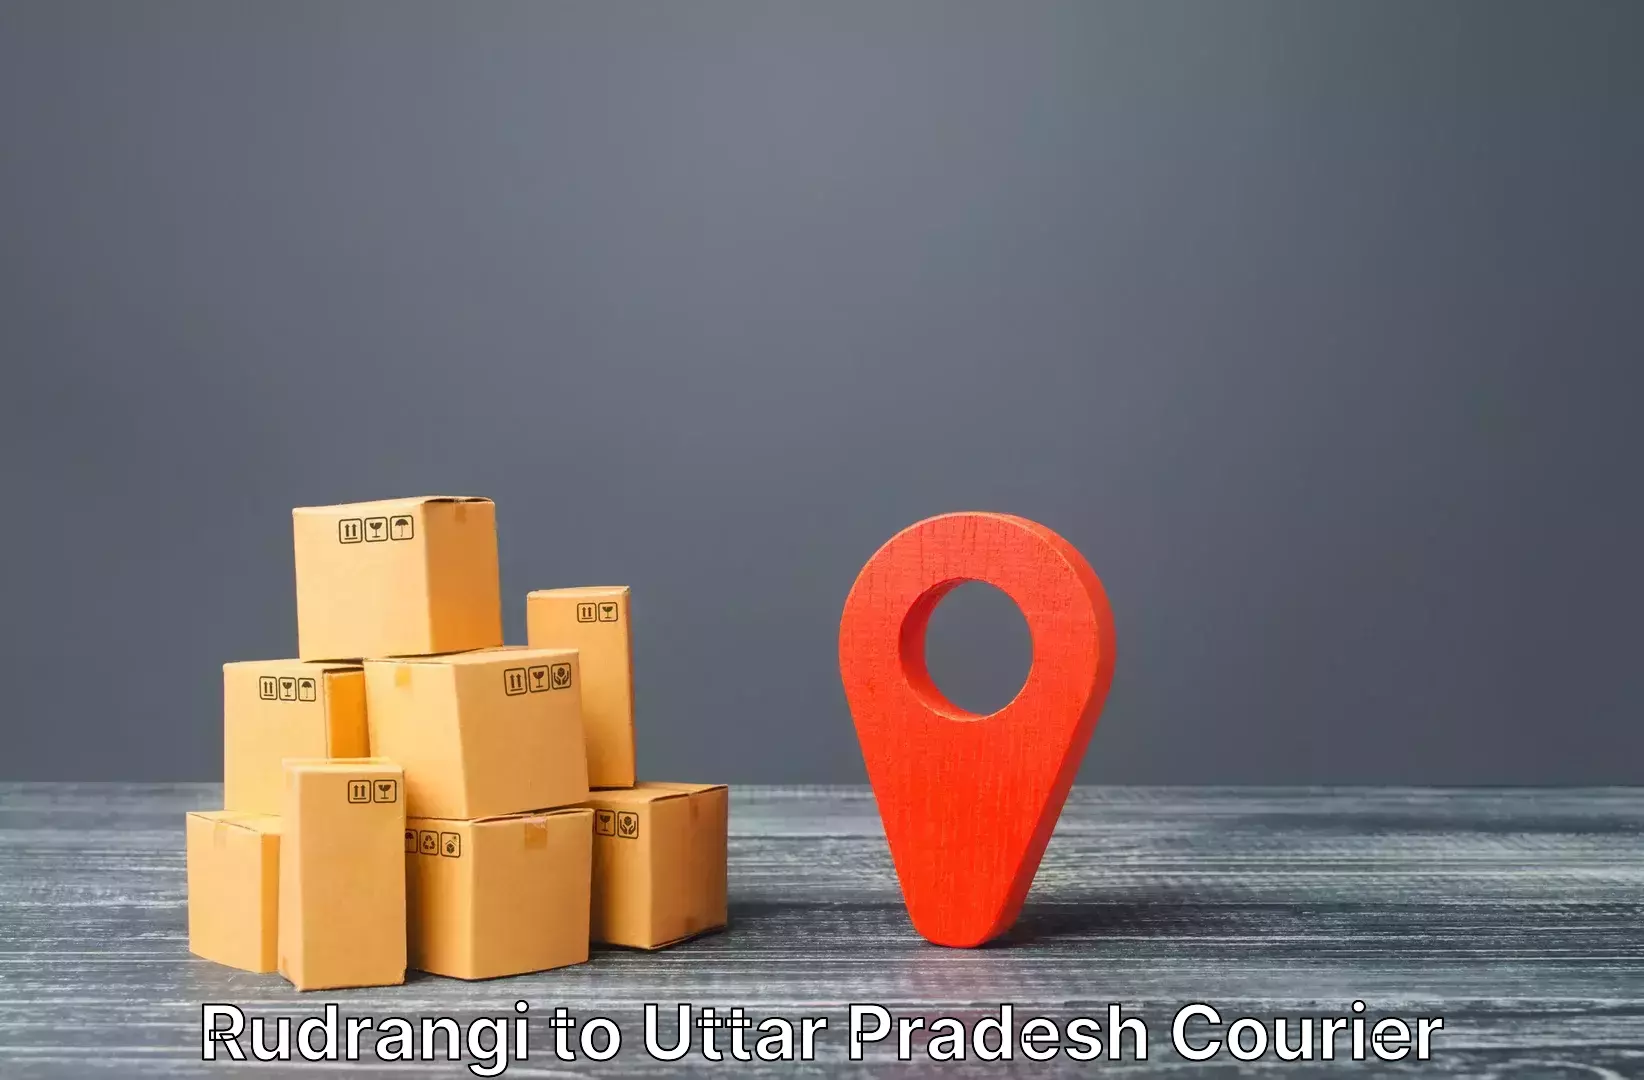 Luggage forwarding service Rudrangi to Khair